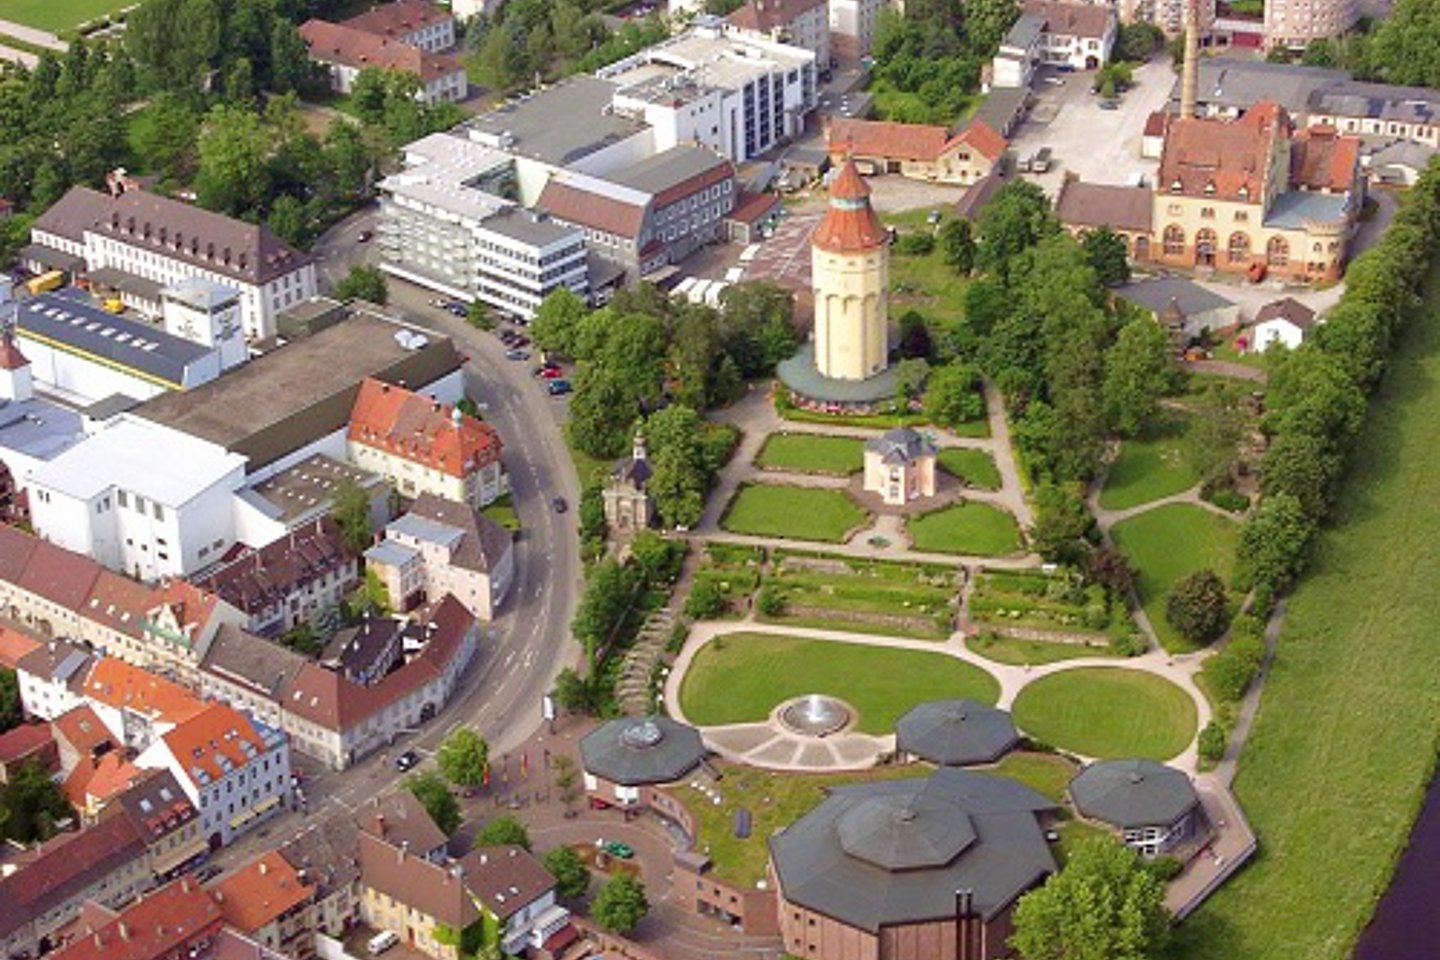 Blick auf Park und umgebende Stadtbereiche in Rastatt 2014